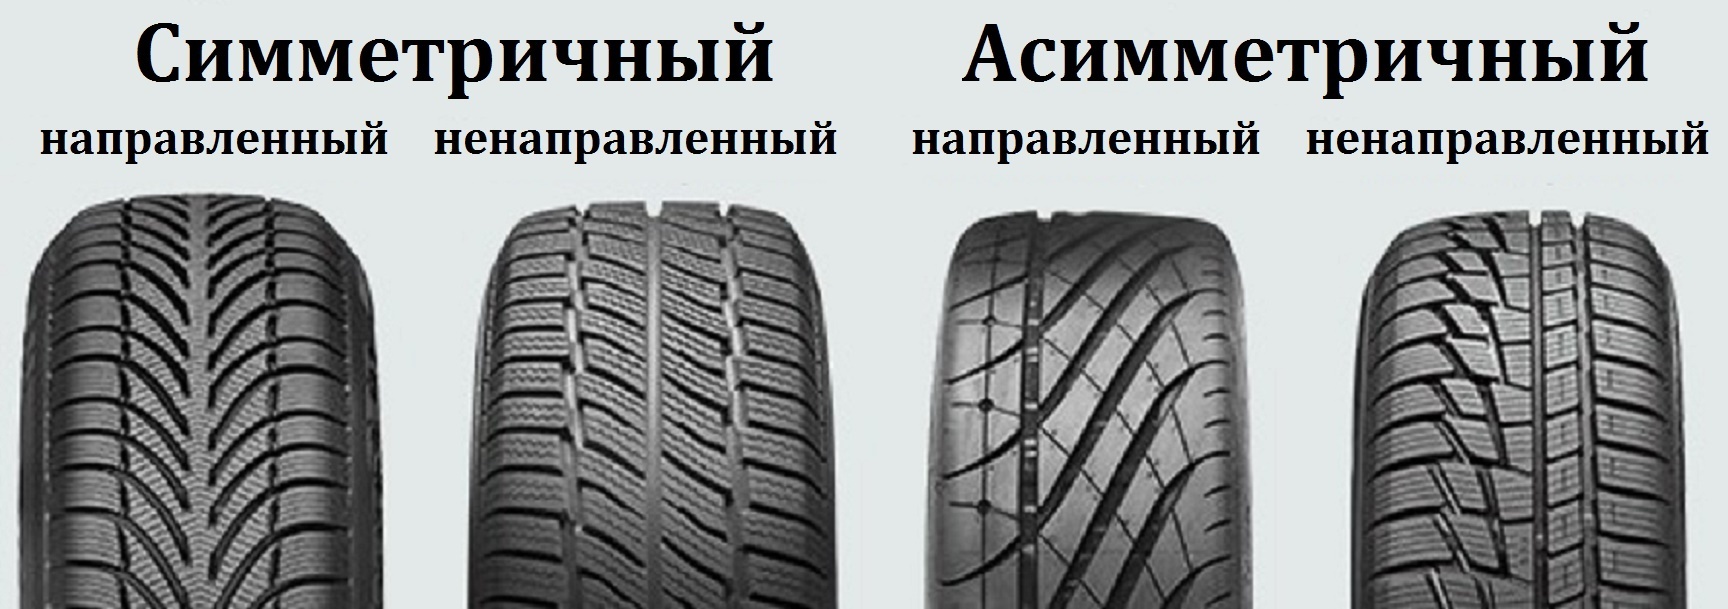 Comment choisir les pneus selon vos besoins ? Nous conseillons!